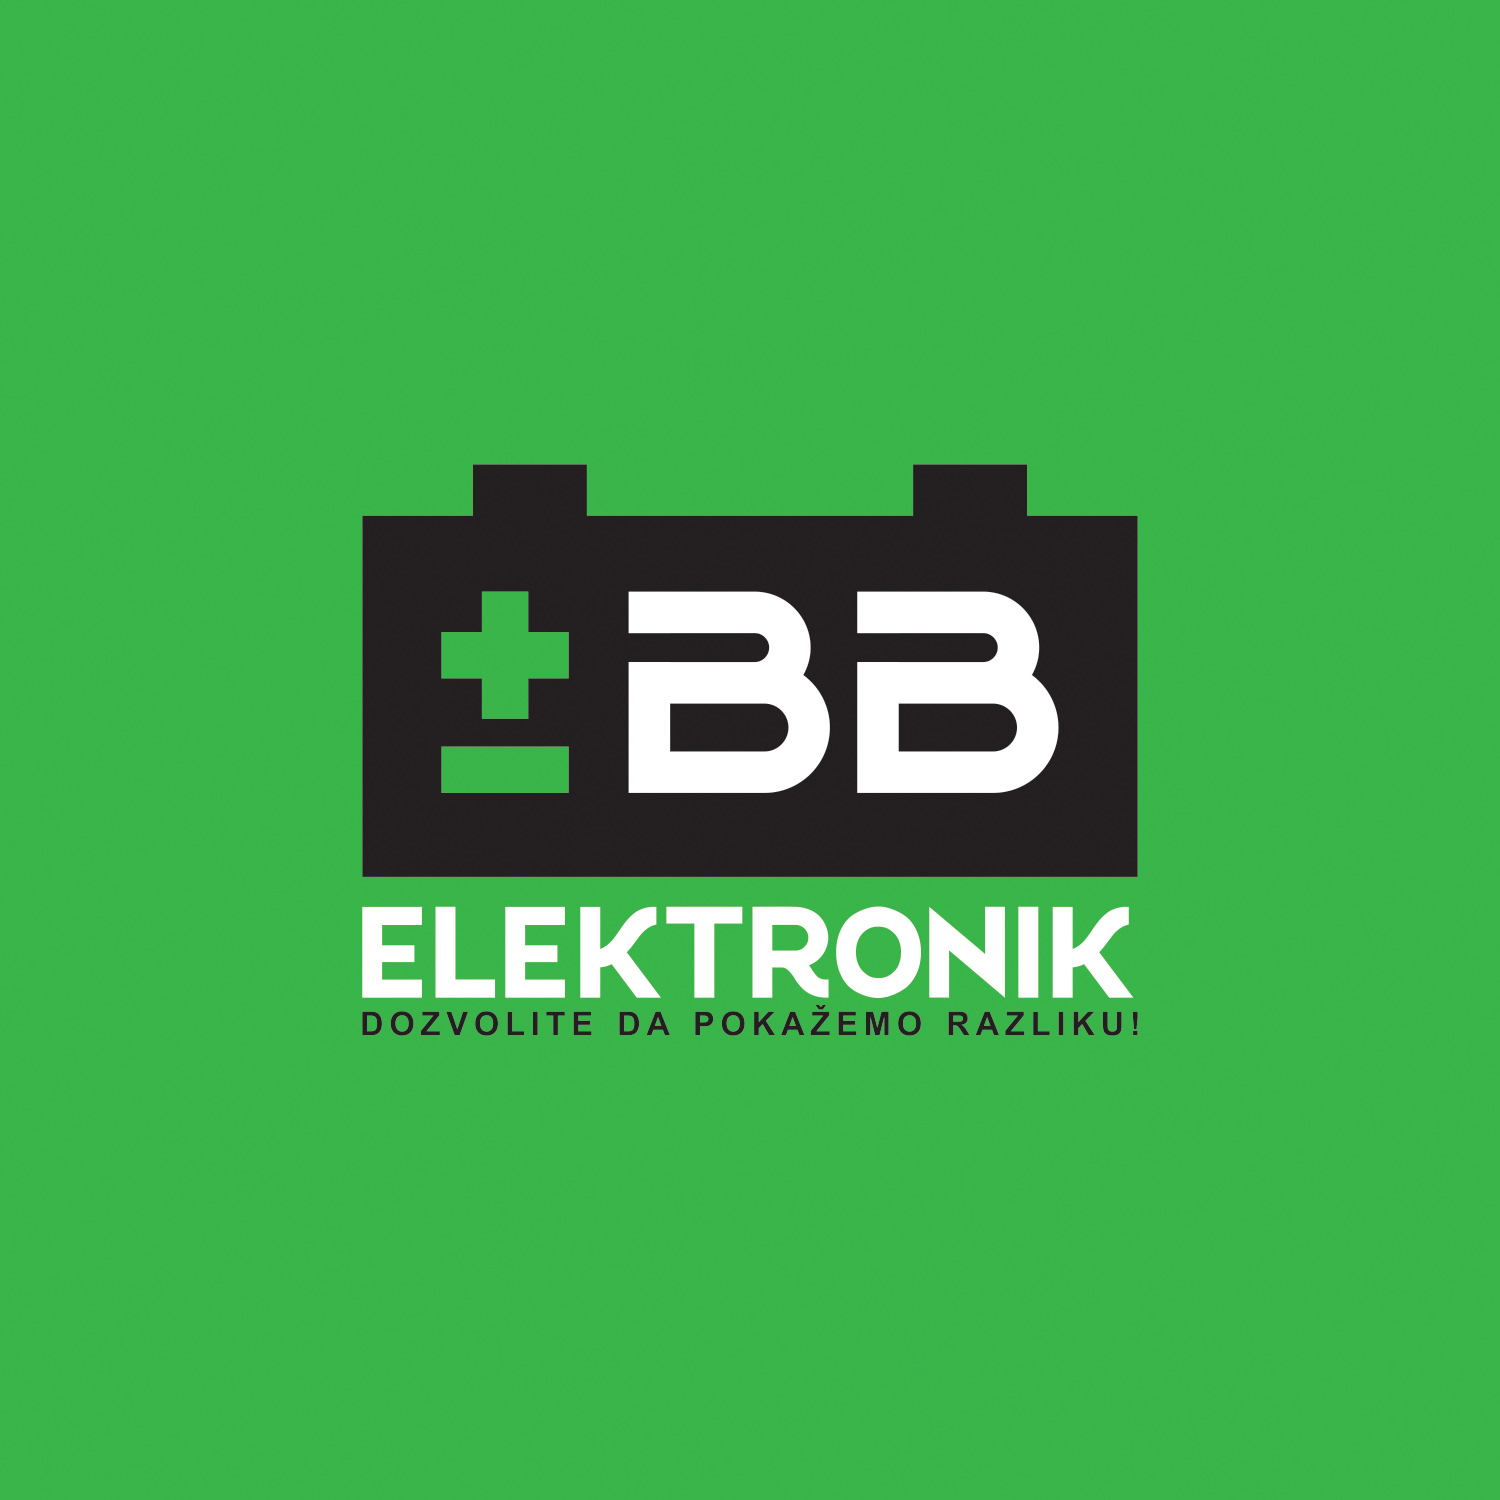 BB elektronik doo logo